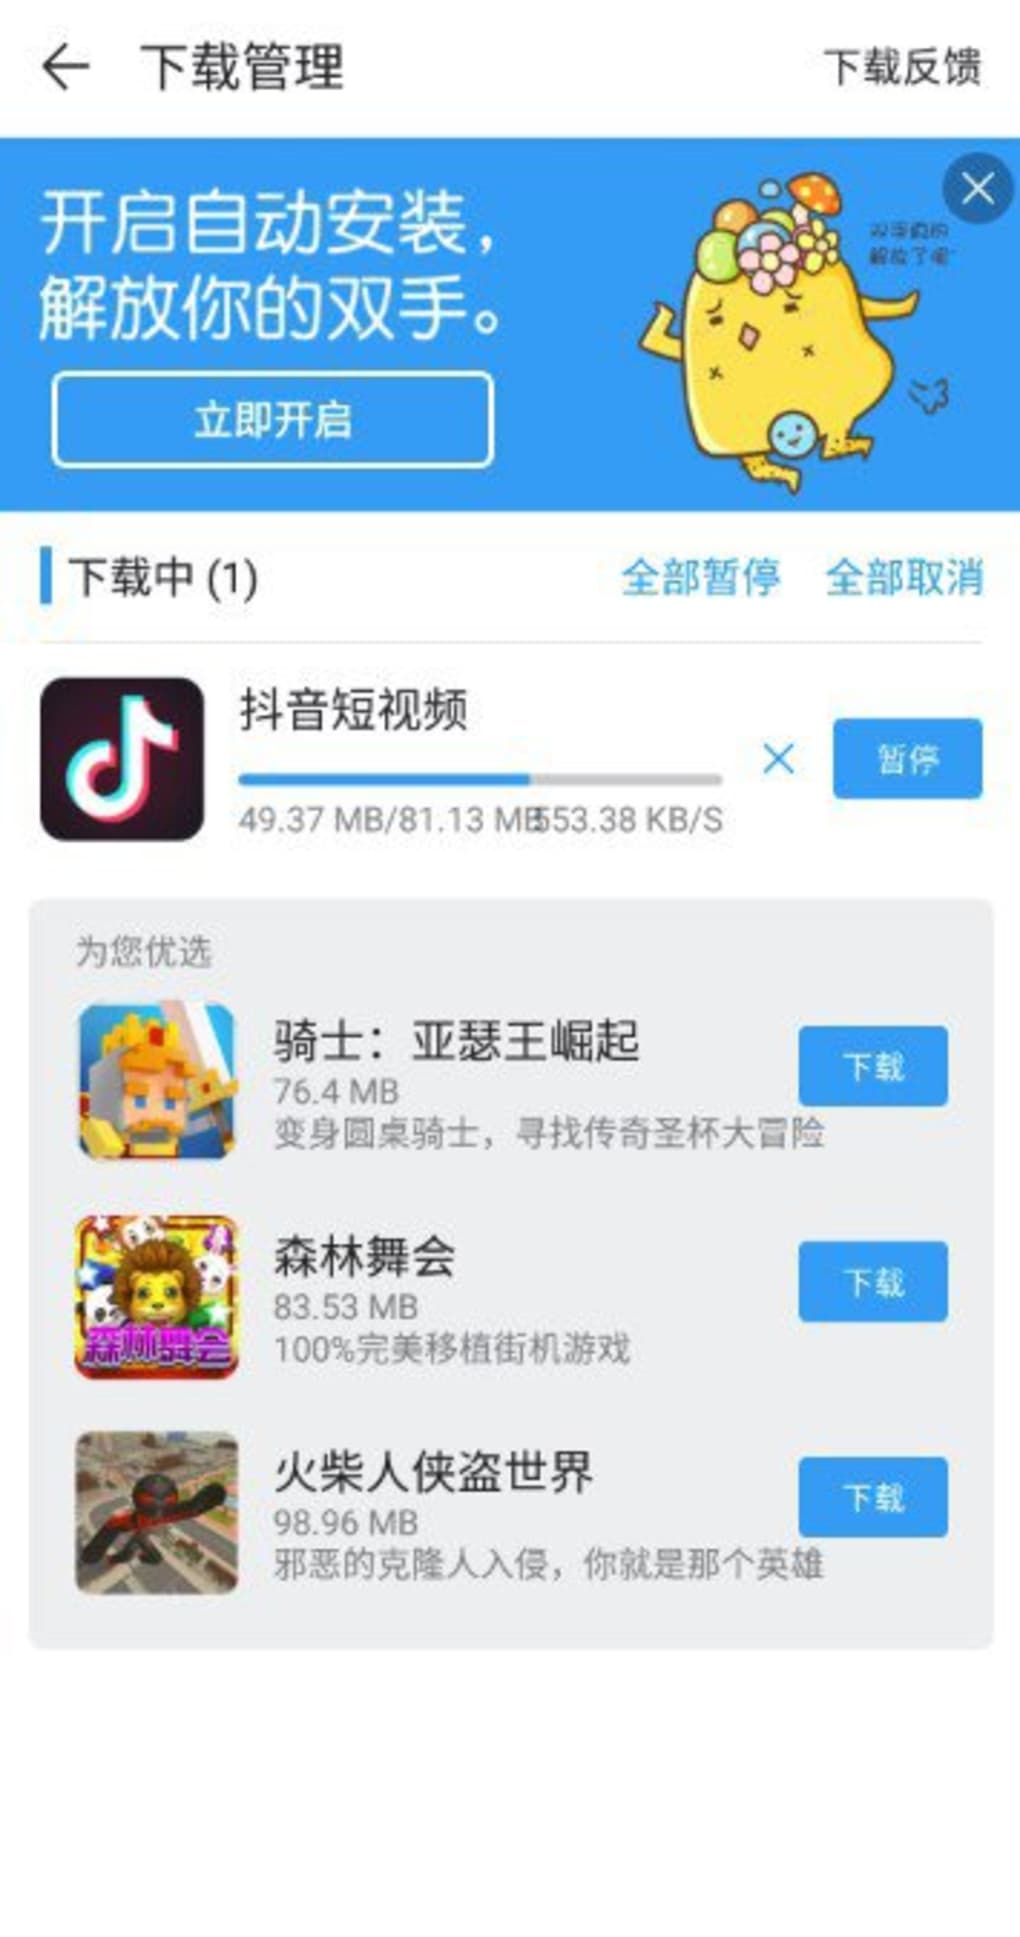 Neue apps in Xinyang